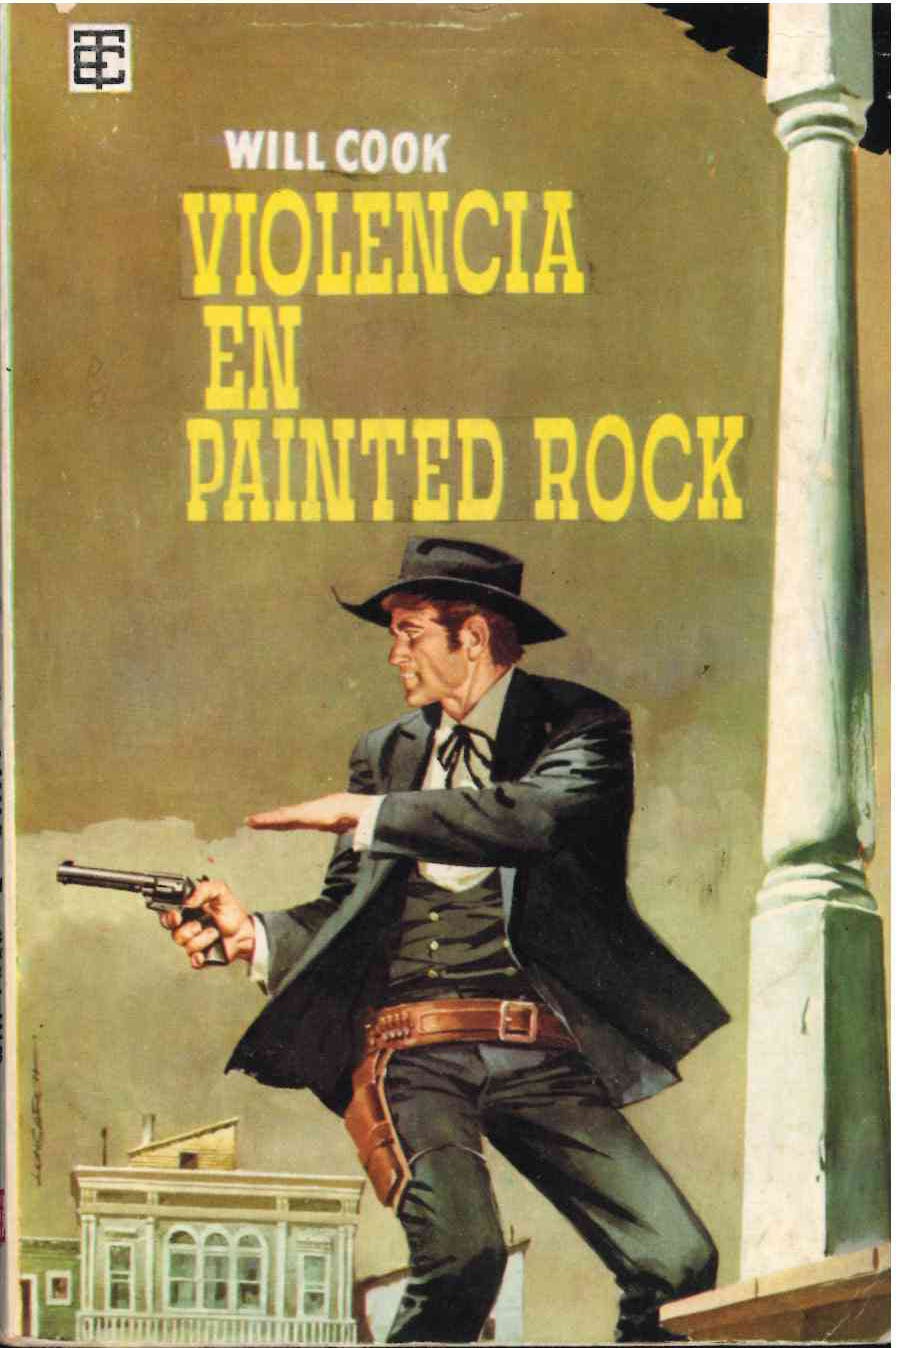 Toray Oeste nº 5. Violencia en Painted Rock por Will Cook. Toray 1960